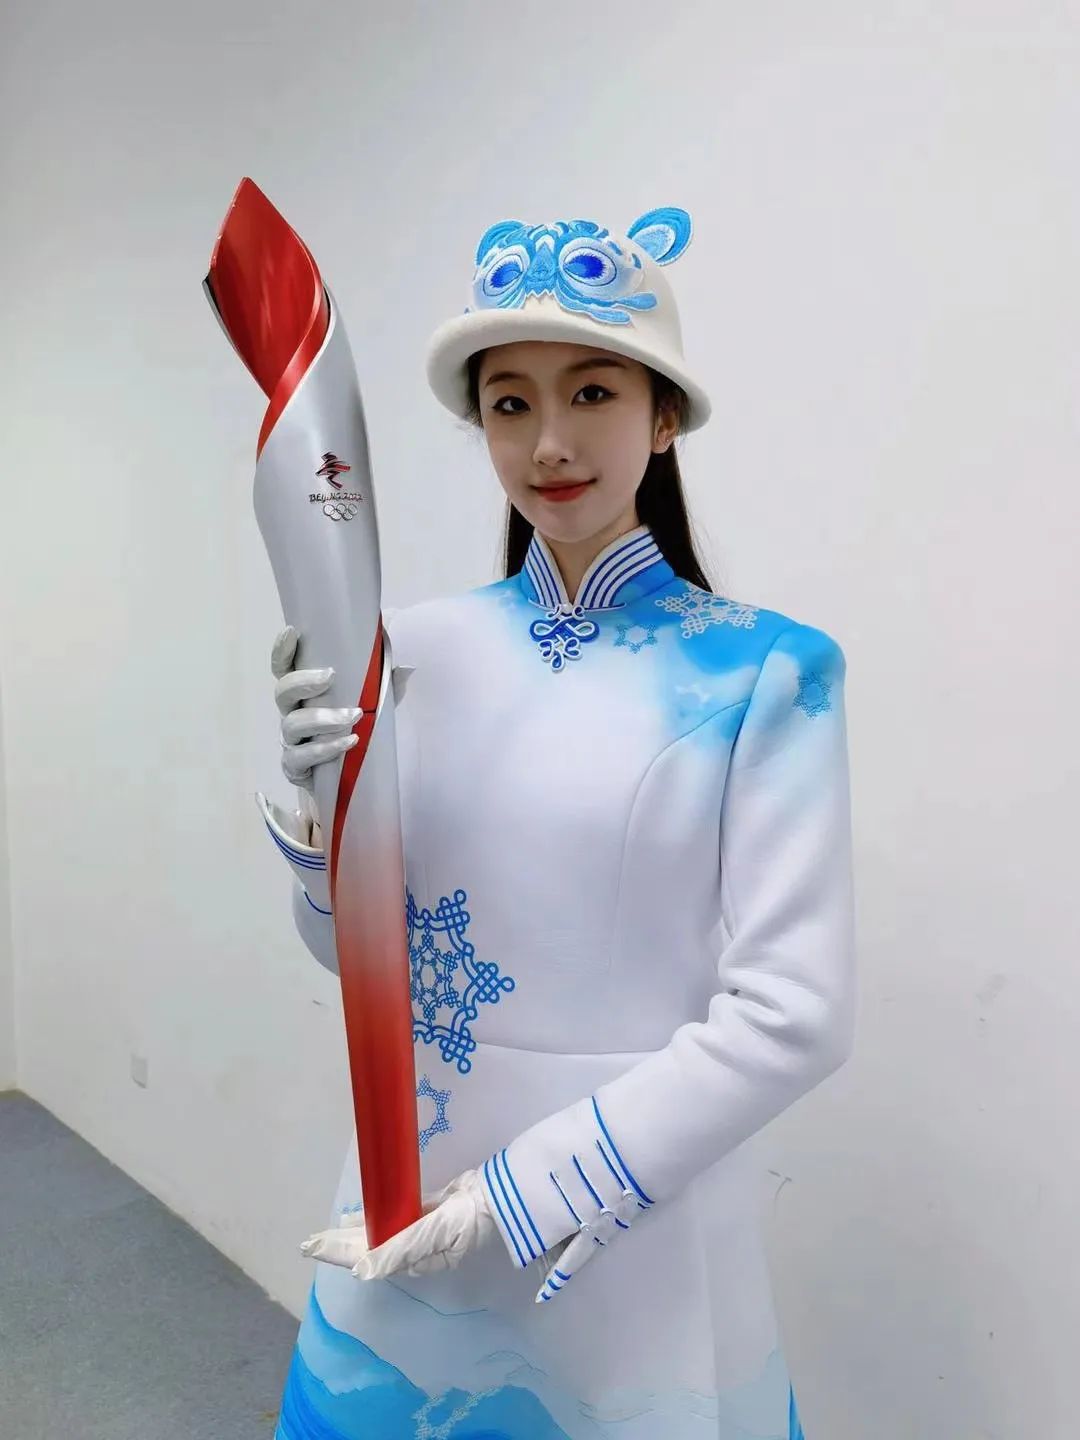 中国冬奥会衣服图片